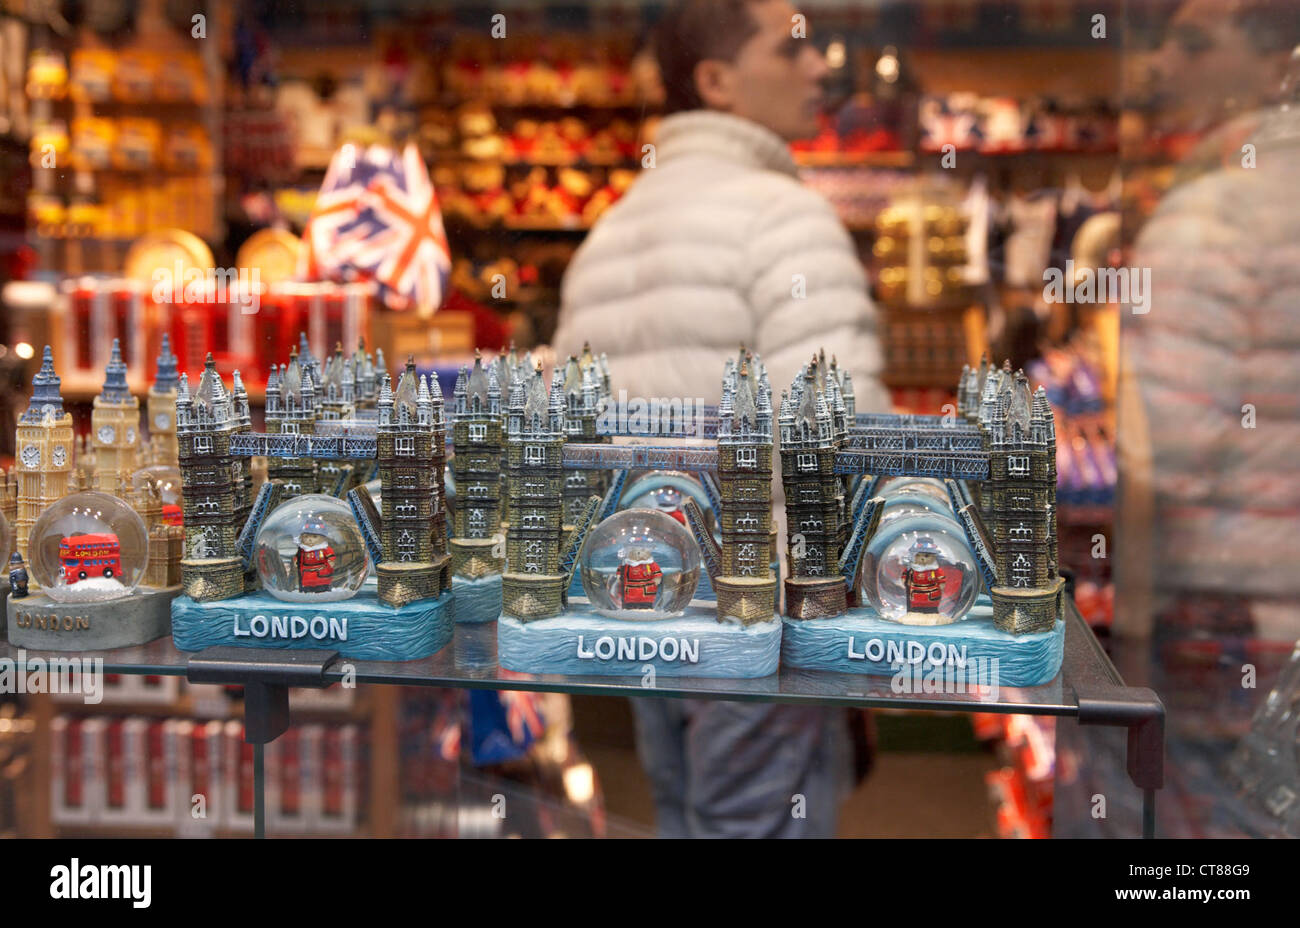 London - Miniaturen als Souvenirs in einem Schaufenster Stockfoto